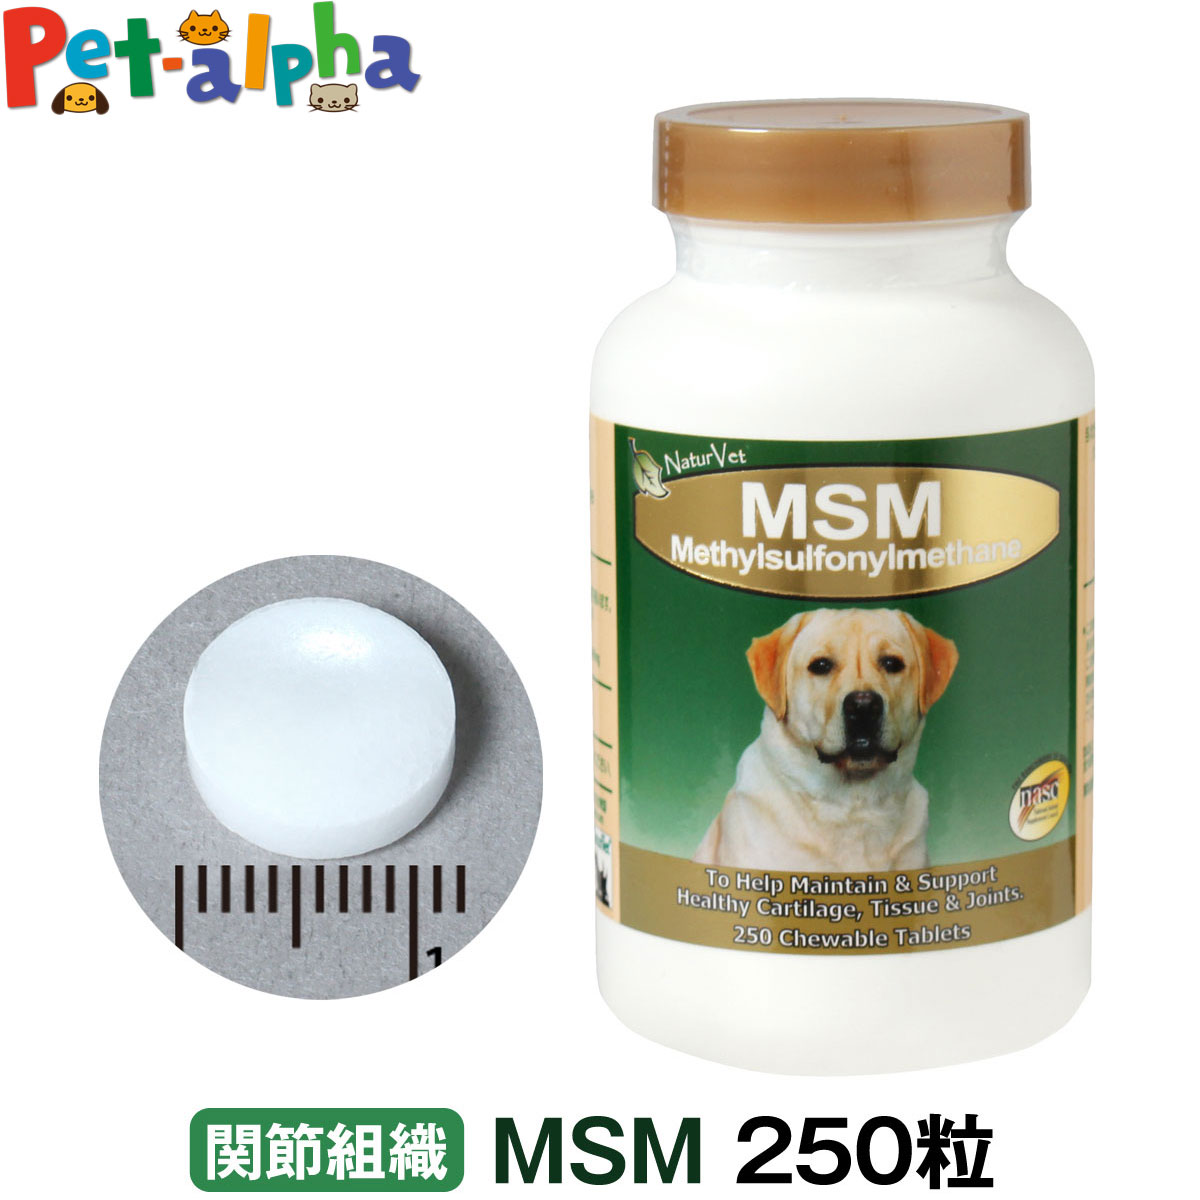 ネイチャーベット MSM 250粒(動物用 サプリメント 栄養補助食品 ペットサプリ 健康維持 健康食品 健康補助食品 関節サポート ペットグッズ)